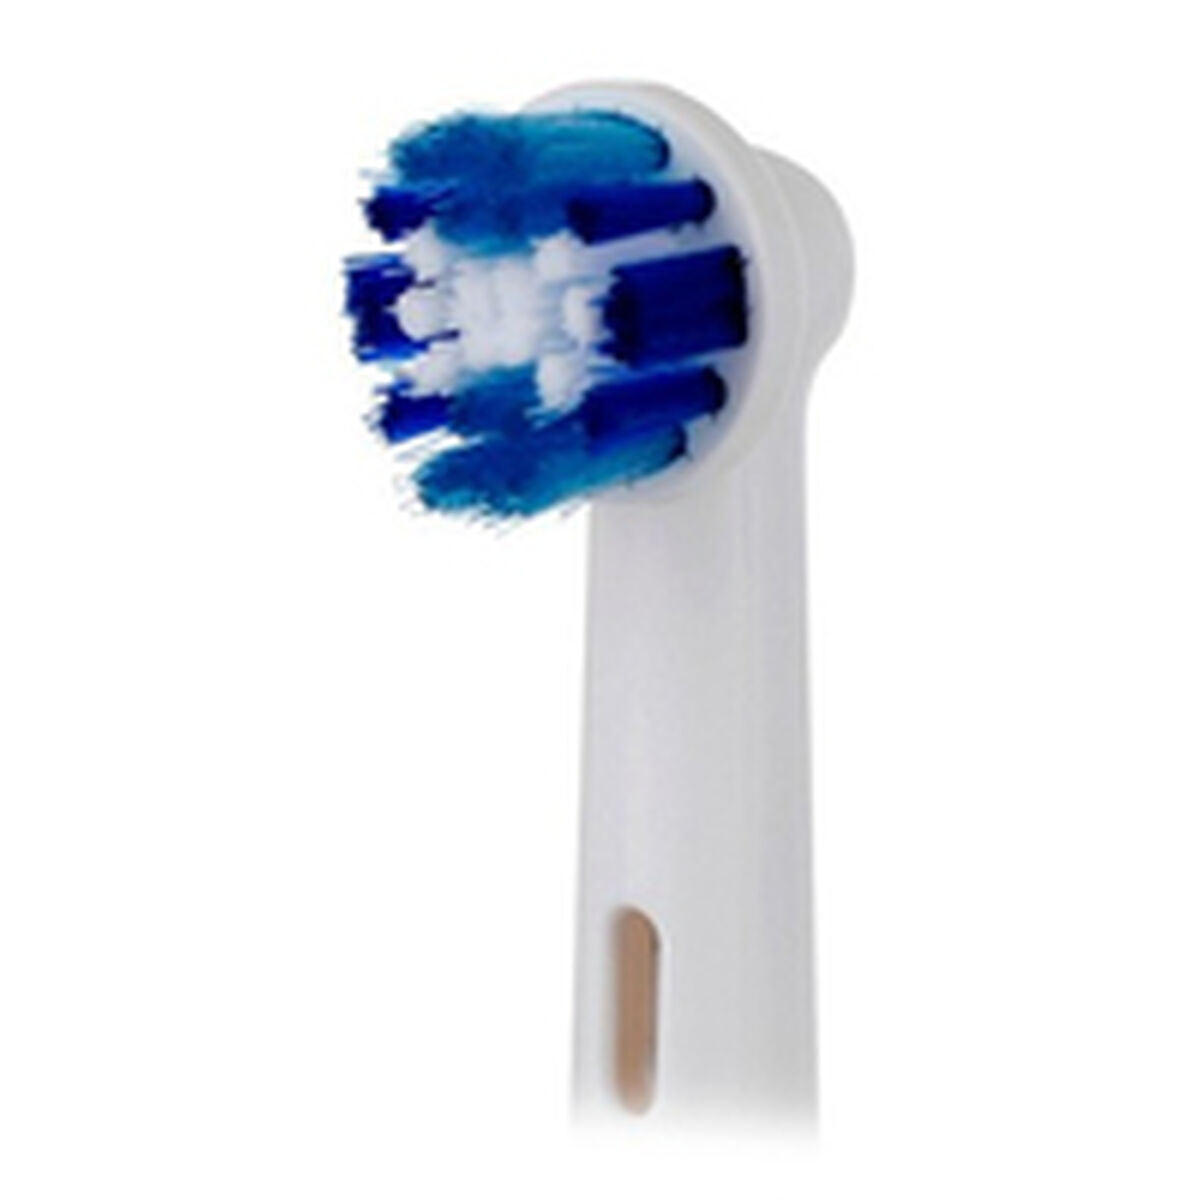 Ηλεκτρική οδοντόβουρτσα Oral-B Pro 1 500